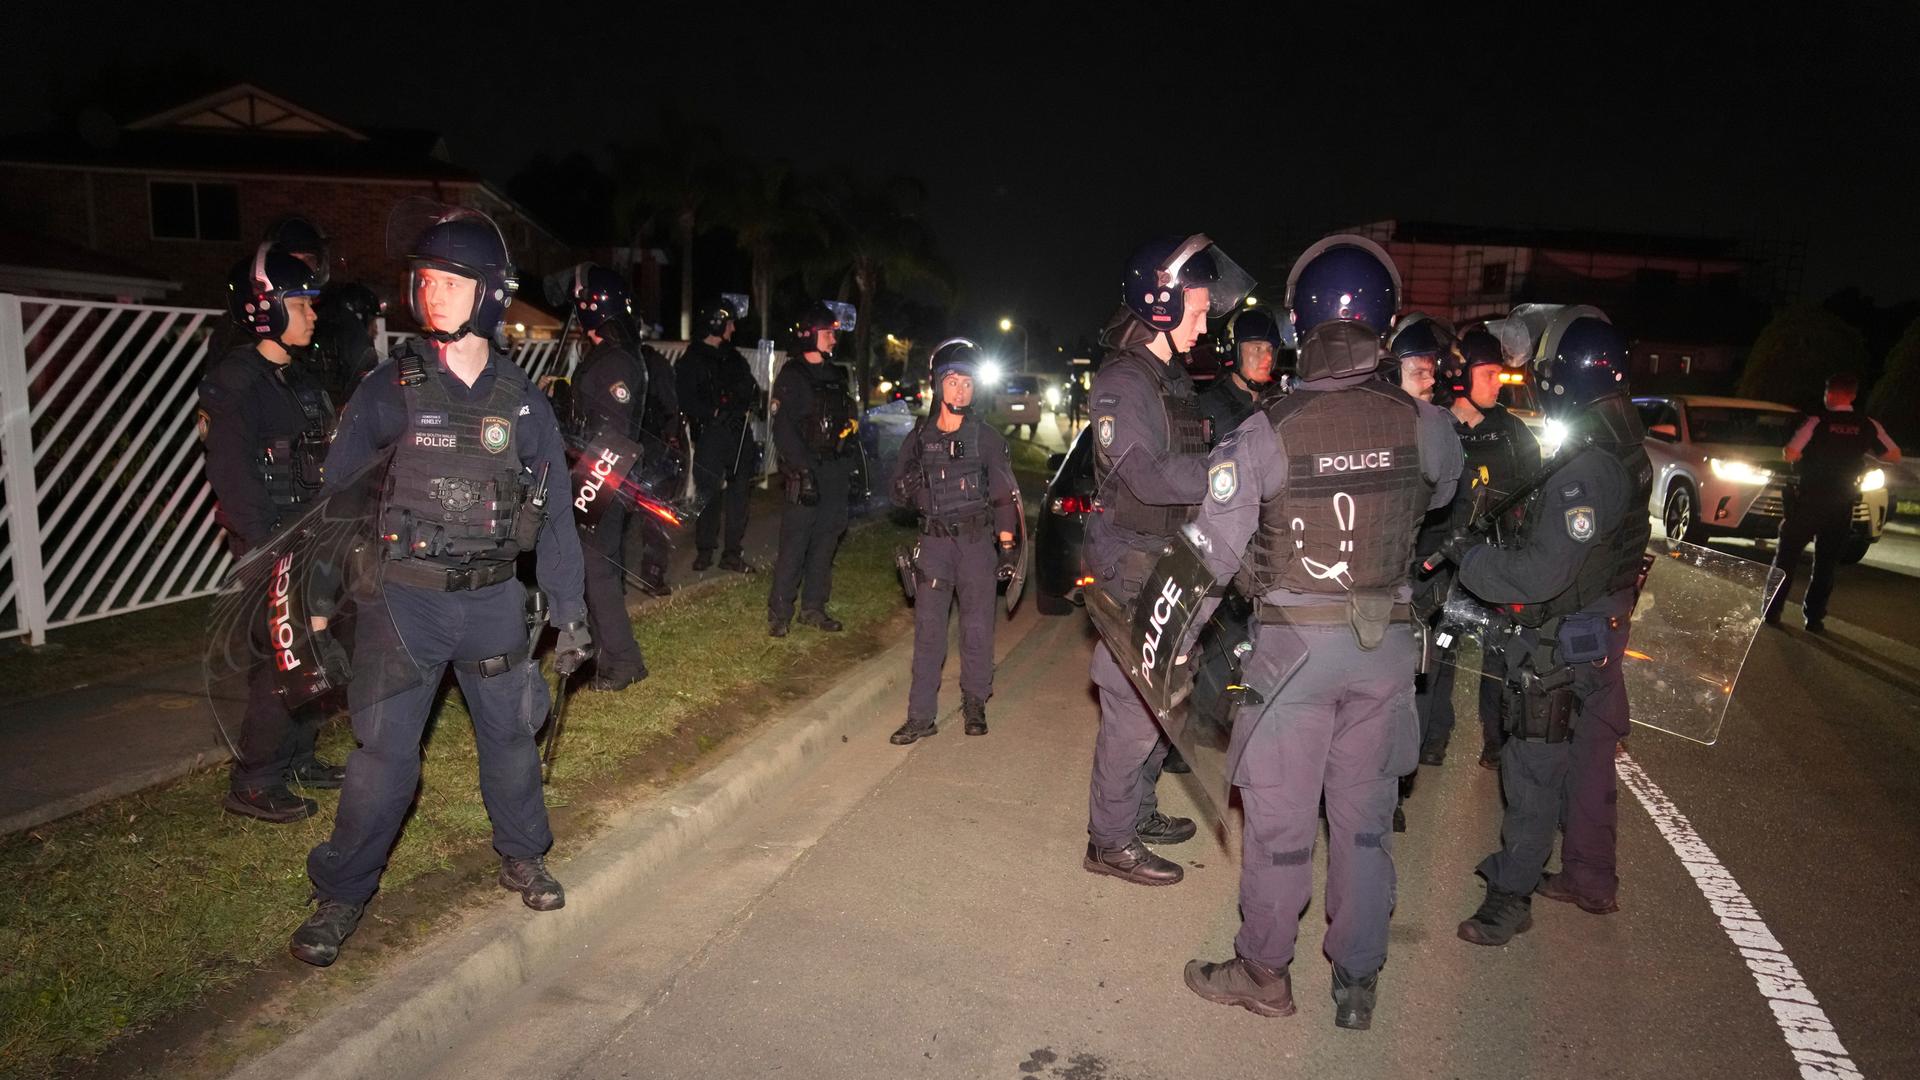 Es ist dunkel: Mehre bewaffnete Polizisten in dunkleblauen Uniformen mit Helmen und Schildern und stehen an einer beleuchteten Straße